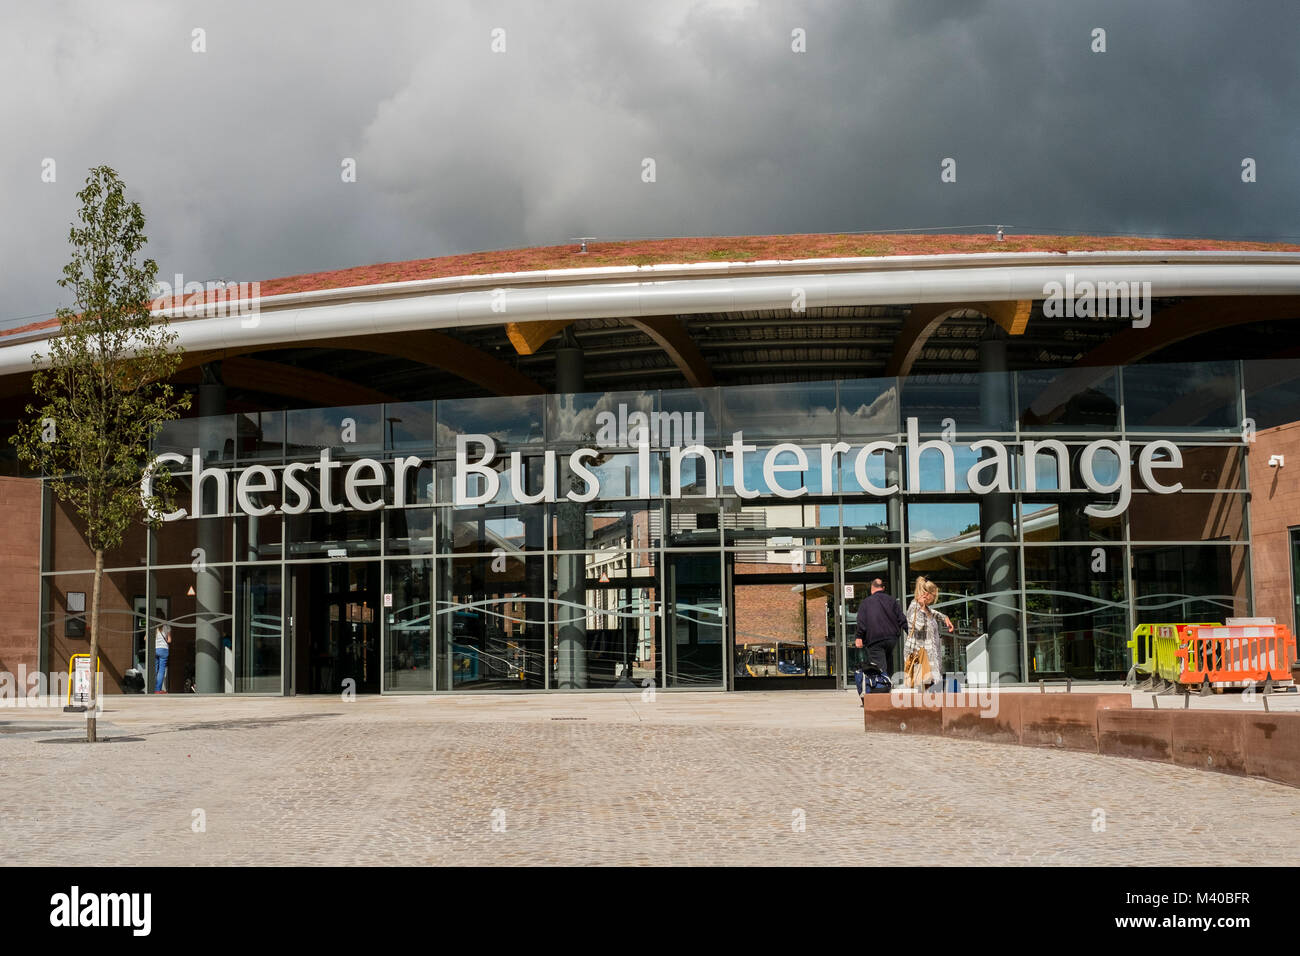 Il nuovo bus stazione di interscambio a Chester, Regno Unito che ha aperto nel 2017. Foto Stock